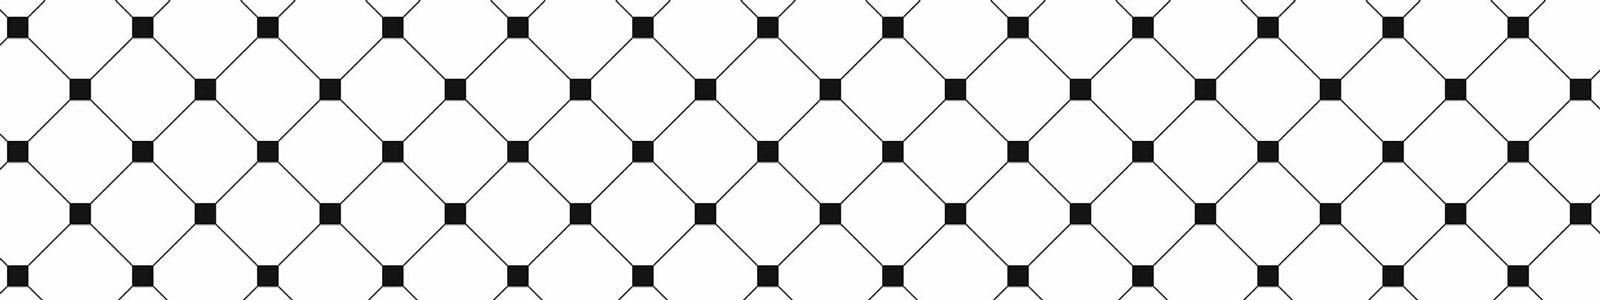 №6082 - Орнамент из белой плитки с небольшими черными вставками